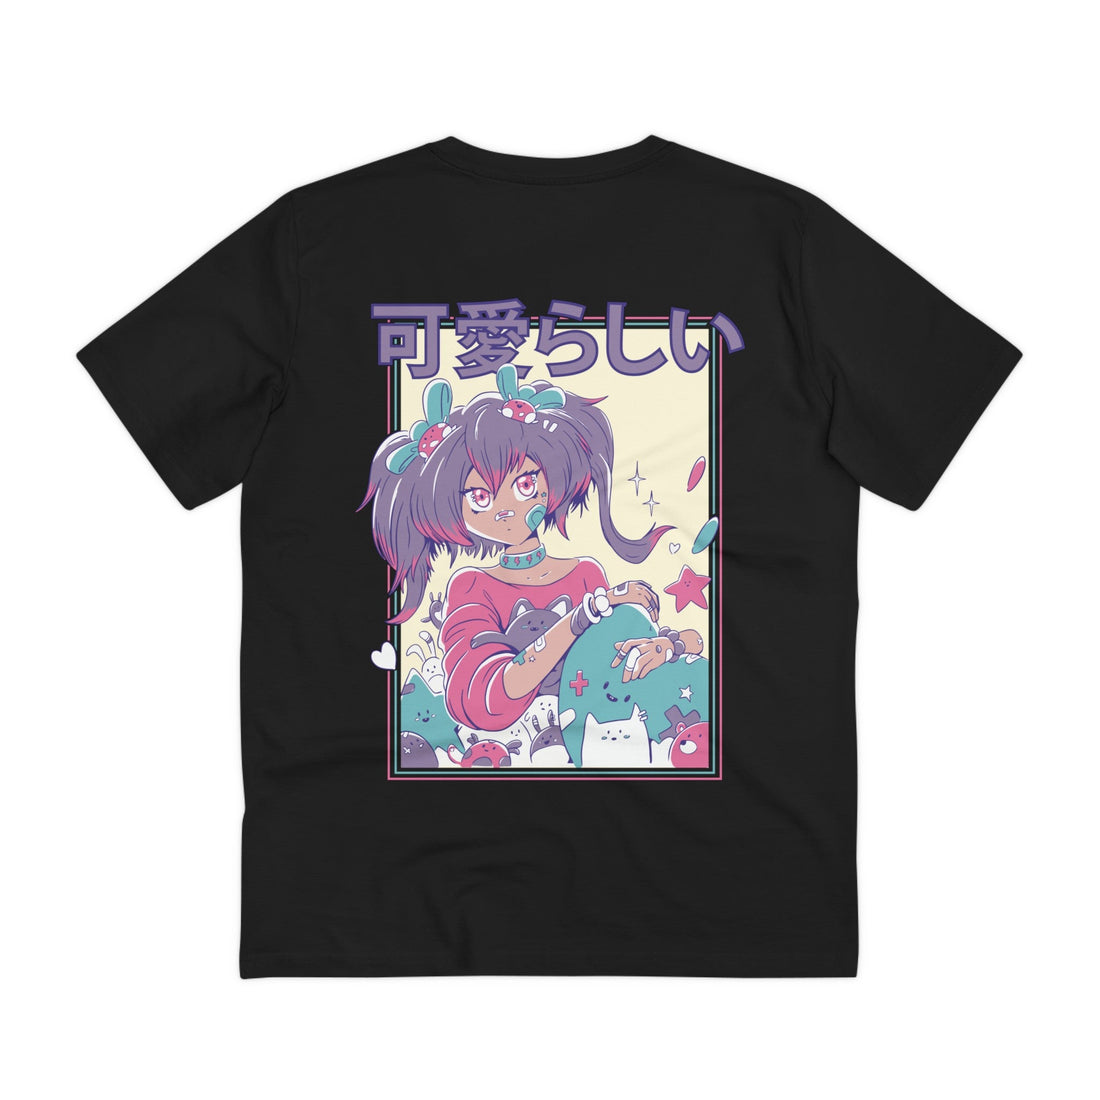 Printify T-Shirt Black / 2XS Cute Anime Girl with Ponytails - Harajuku Anime Girl - Back Design